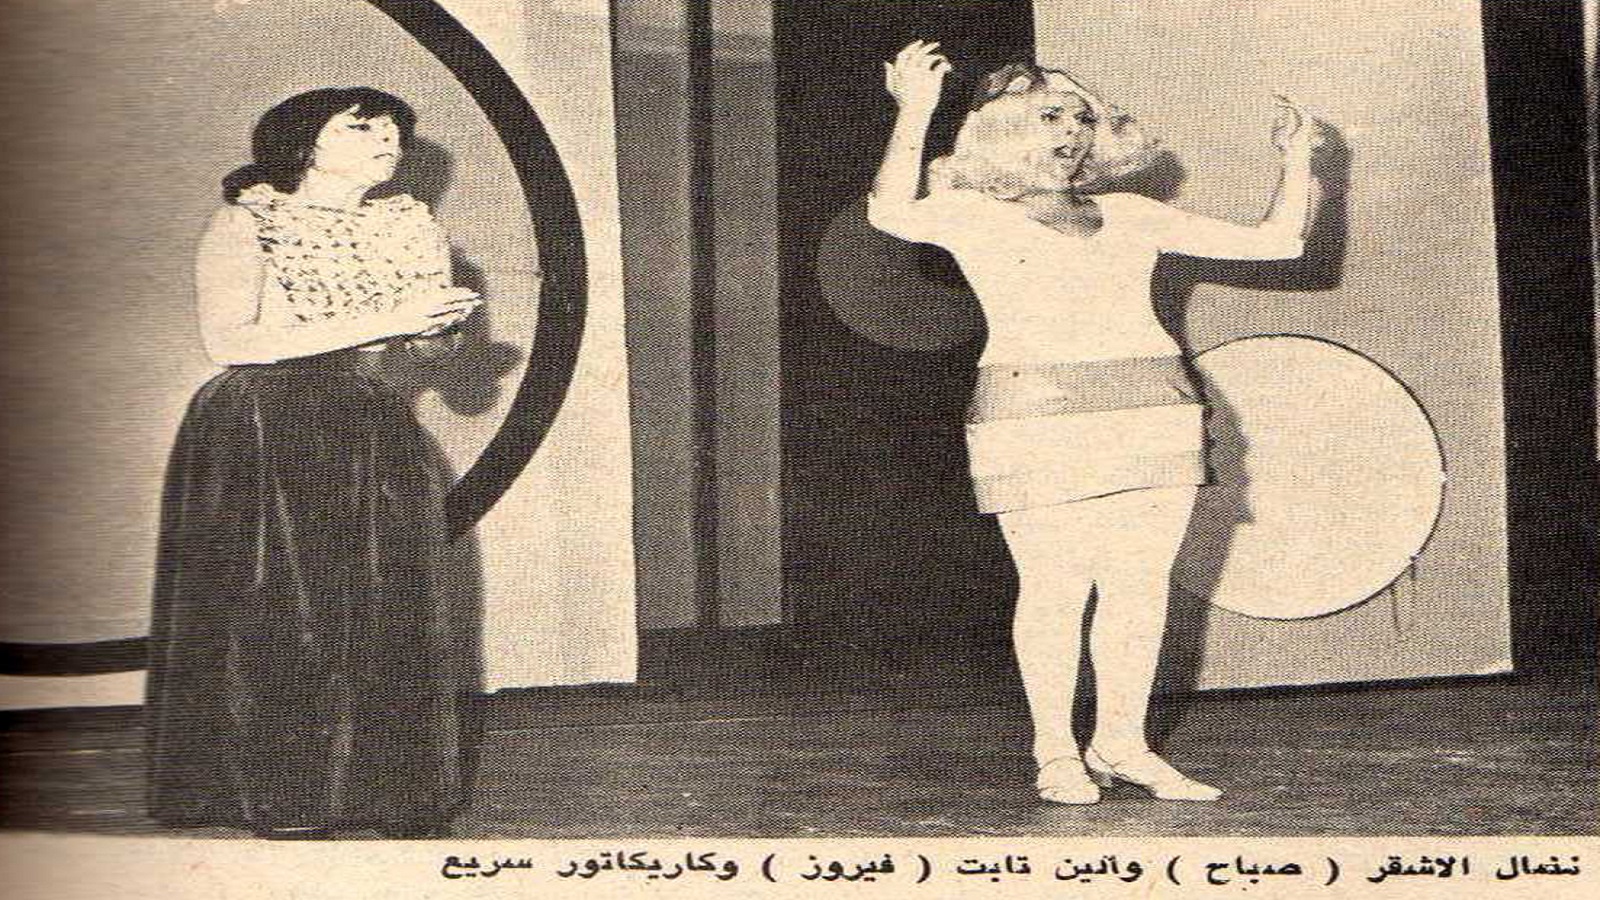 نضال الأشقر في دور صباح، وألين تابت في دور فيروز، "طبعة خاصة"، 1969. 